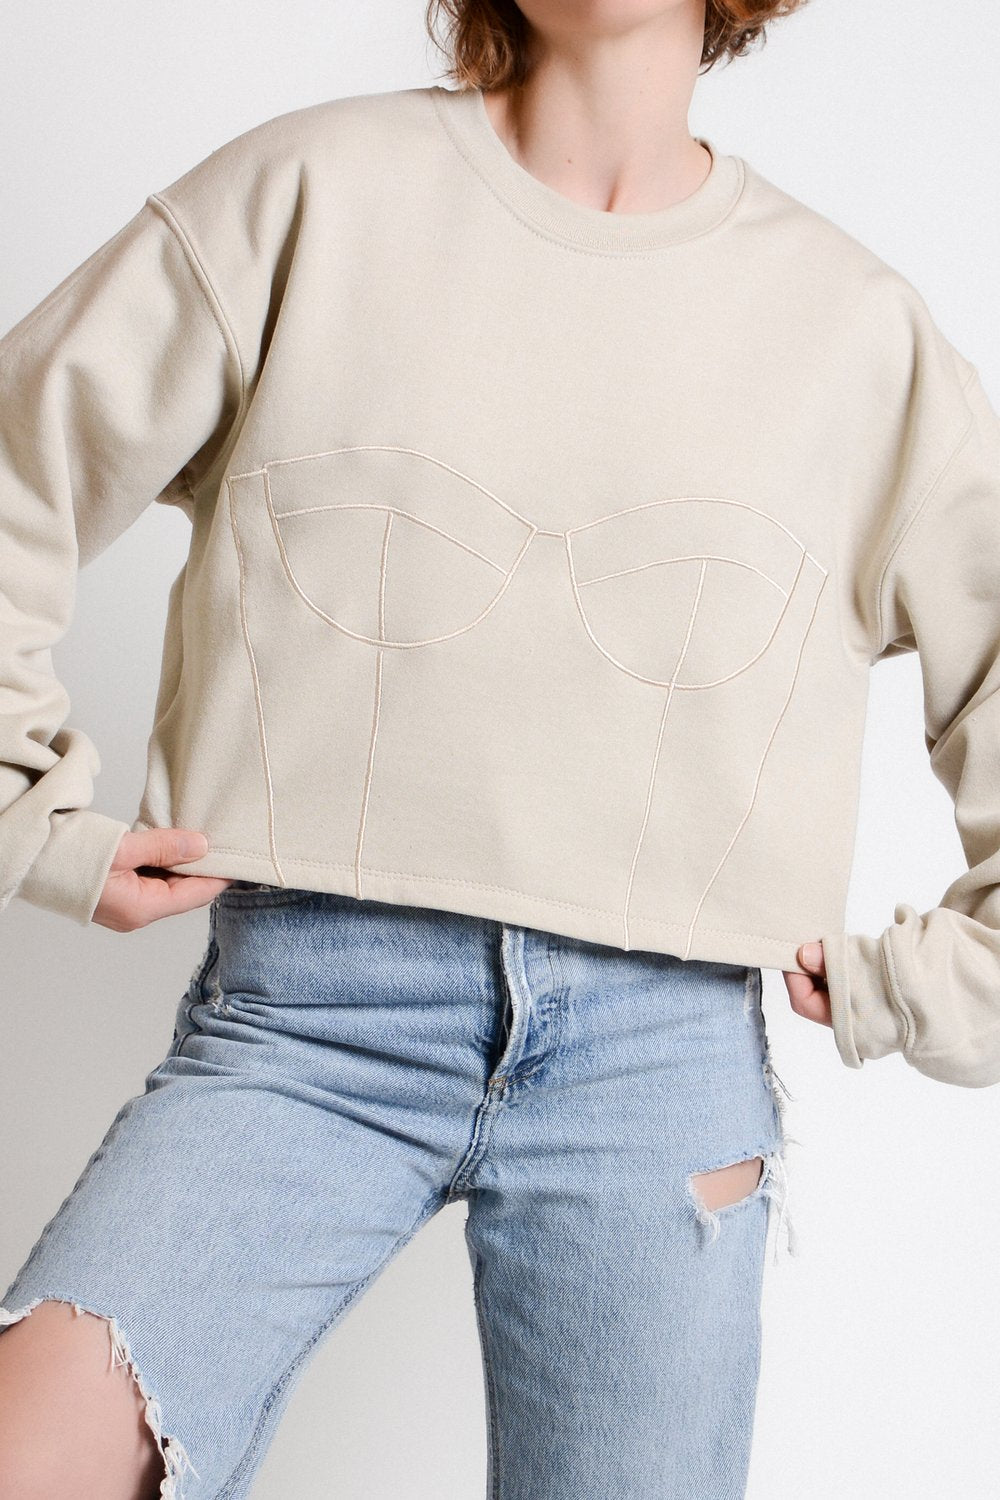 Sarah Donofrio Cropped Corset Embroidered Sweatshirt Beige on Beige